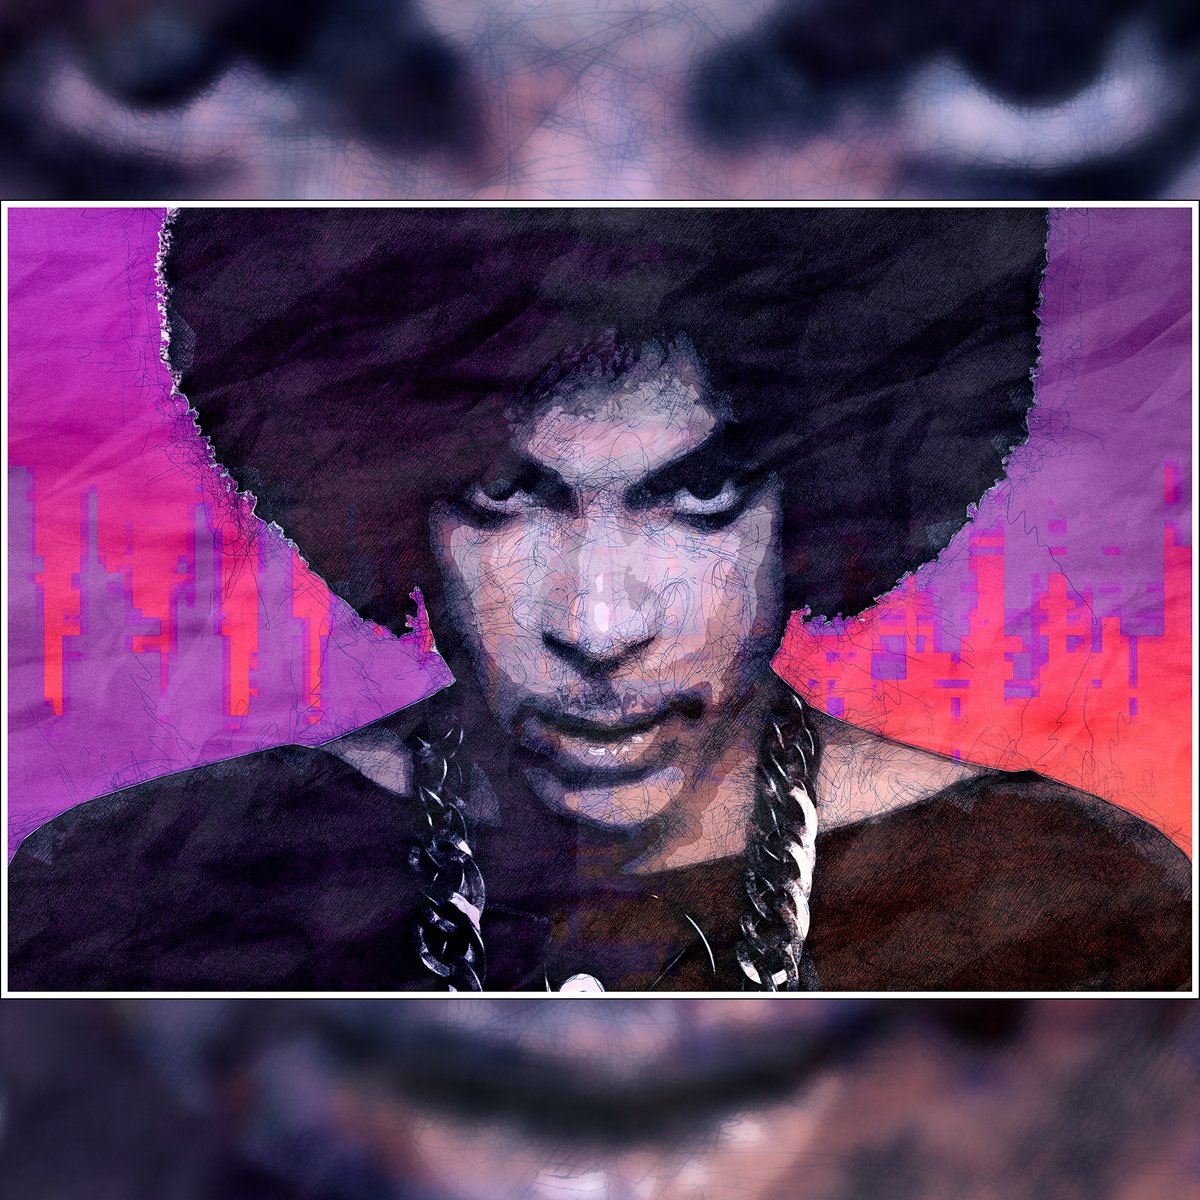 Prince - Purple Rain - Pop Art Modern Poster Andy Warhol Stylised Art by Jakub DK - JAKUB D KRZEWNIAK